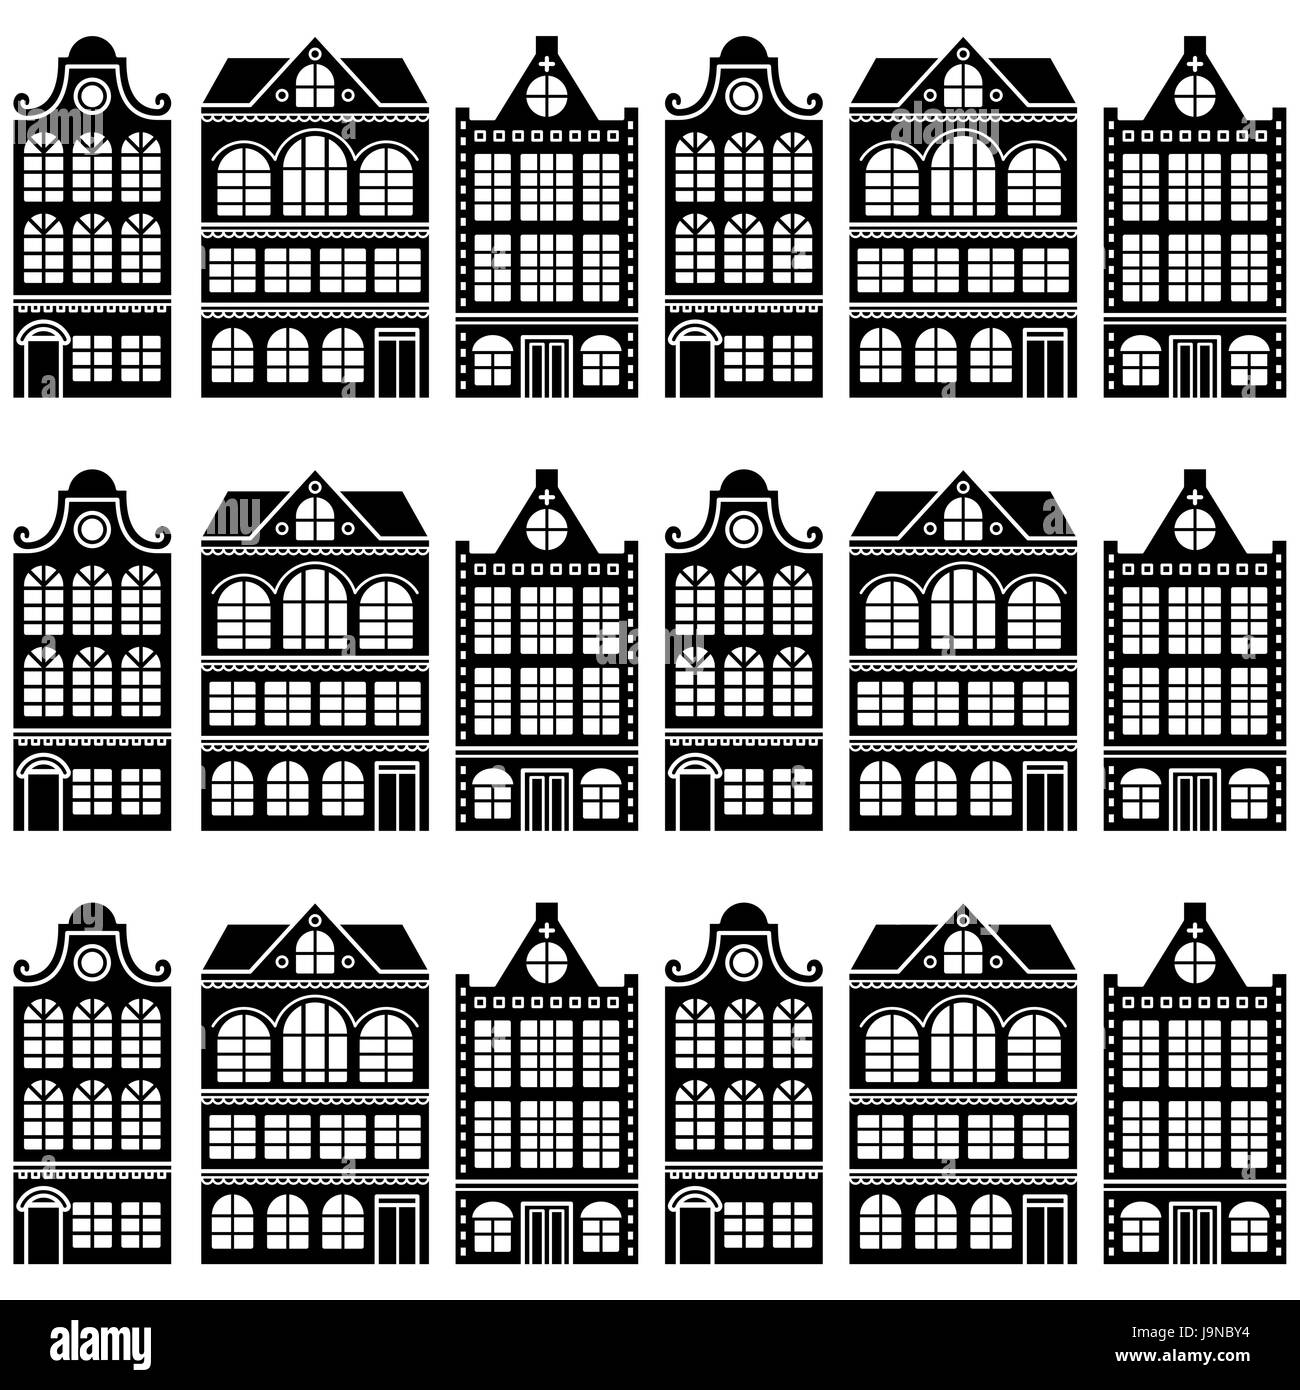 Nahtlose Haus Muster - Niederländisch, Amsterdam beherbergt, Retro-Stil Stock Vektor